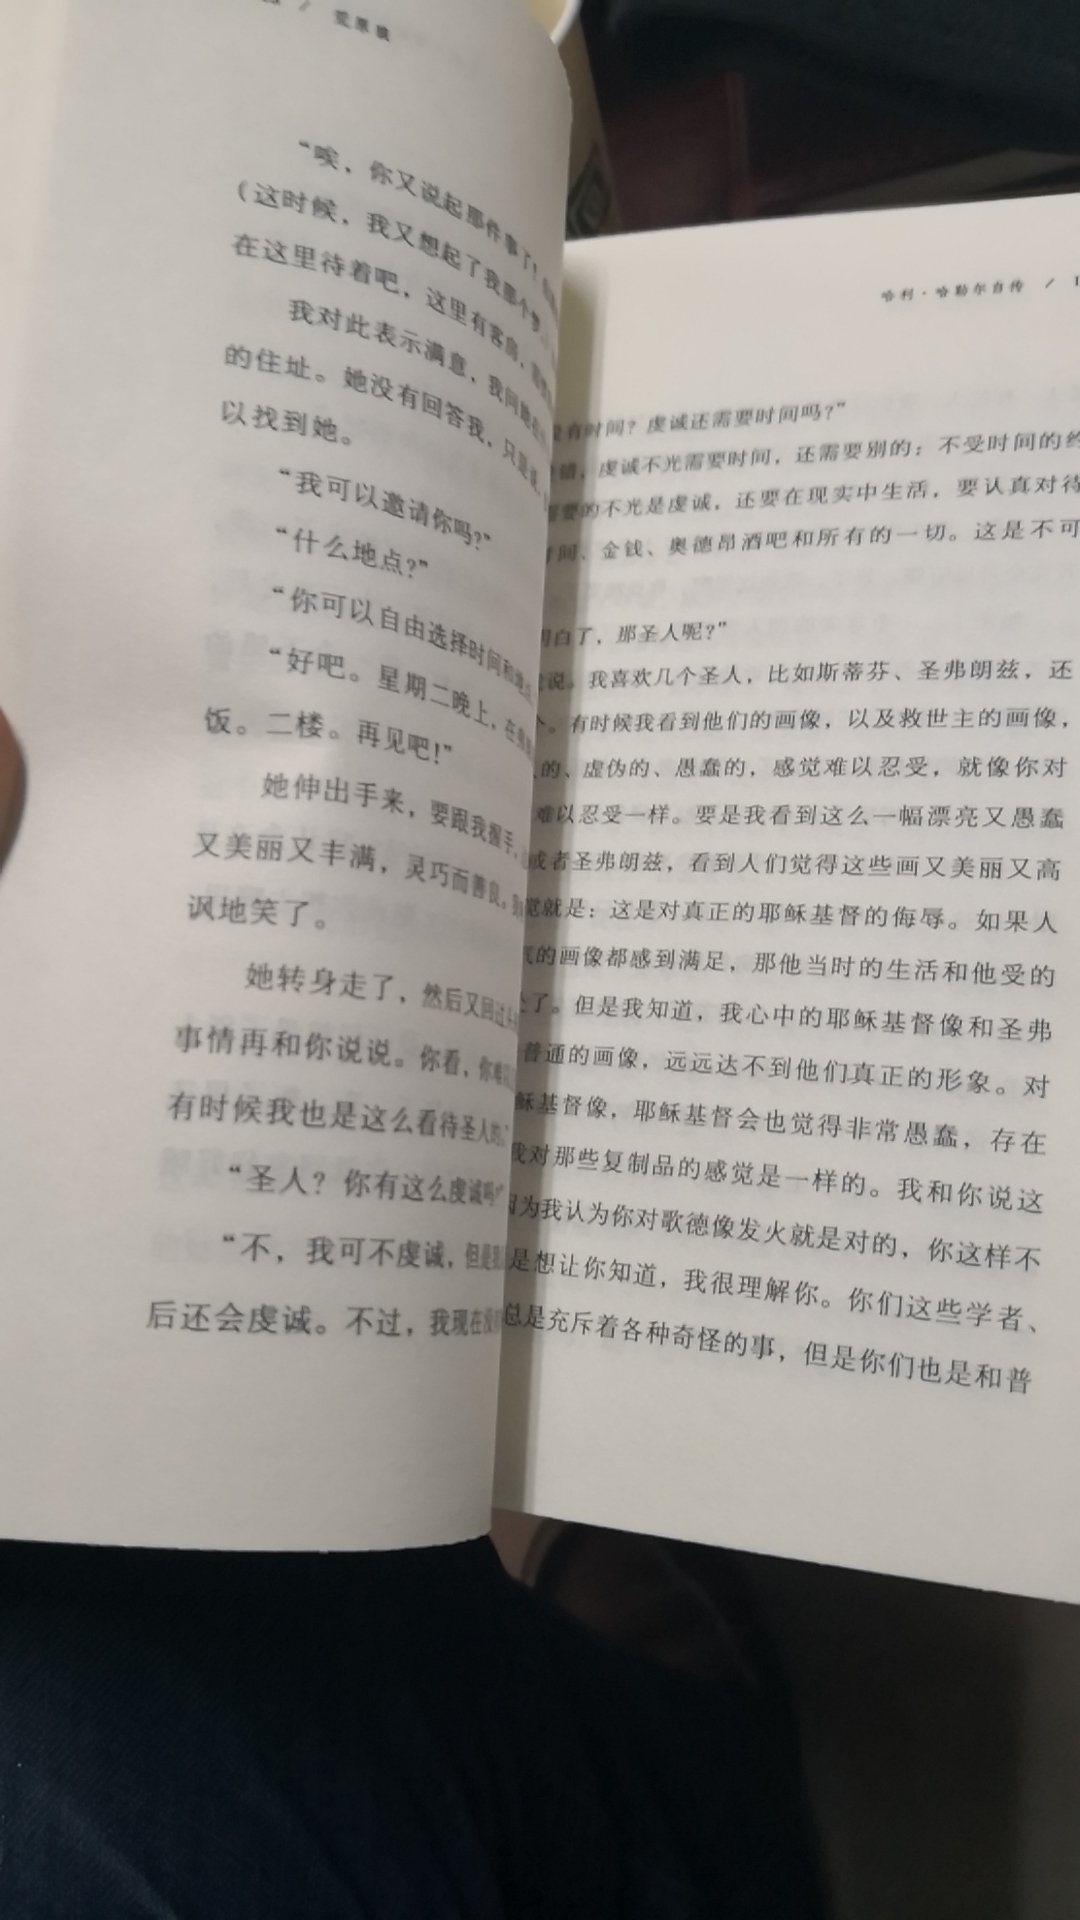 《荒原狼》的译本很多，买了王滨滨译本和这本，希望遇到个好译本。本译本作者的名子没听说过，书中除了小说内容，没有其它。字又密又小，难受！